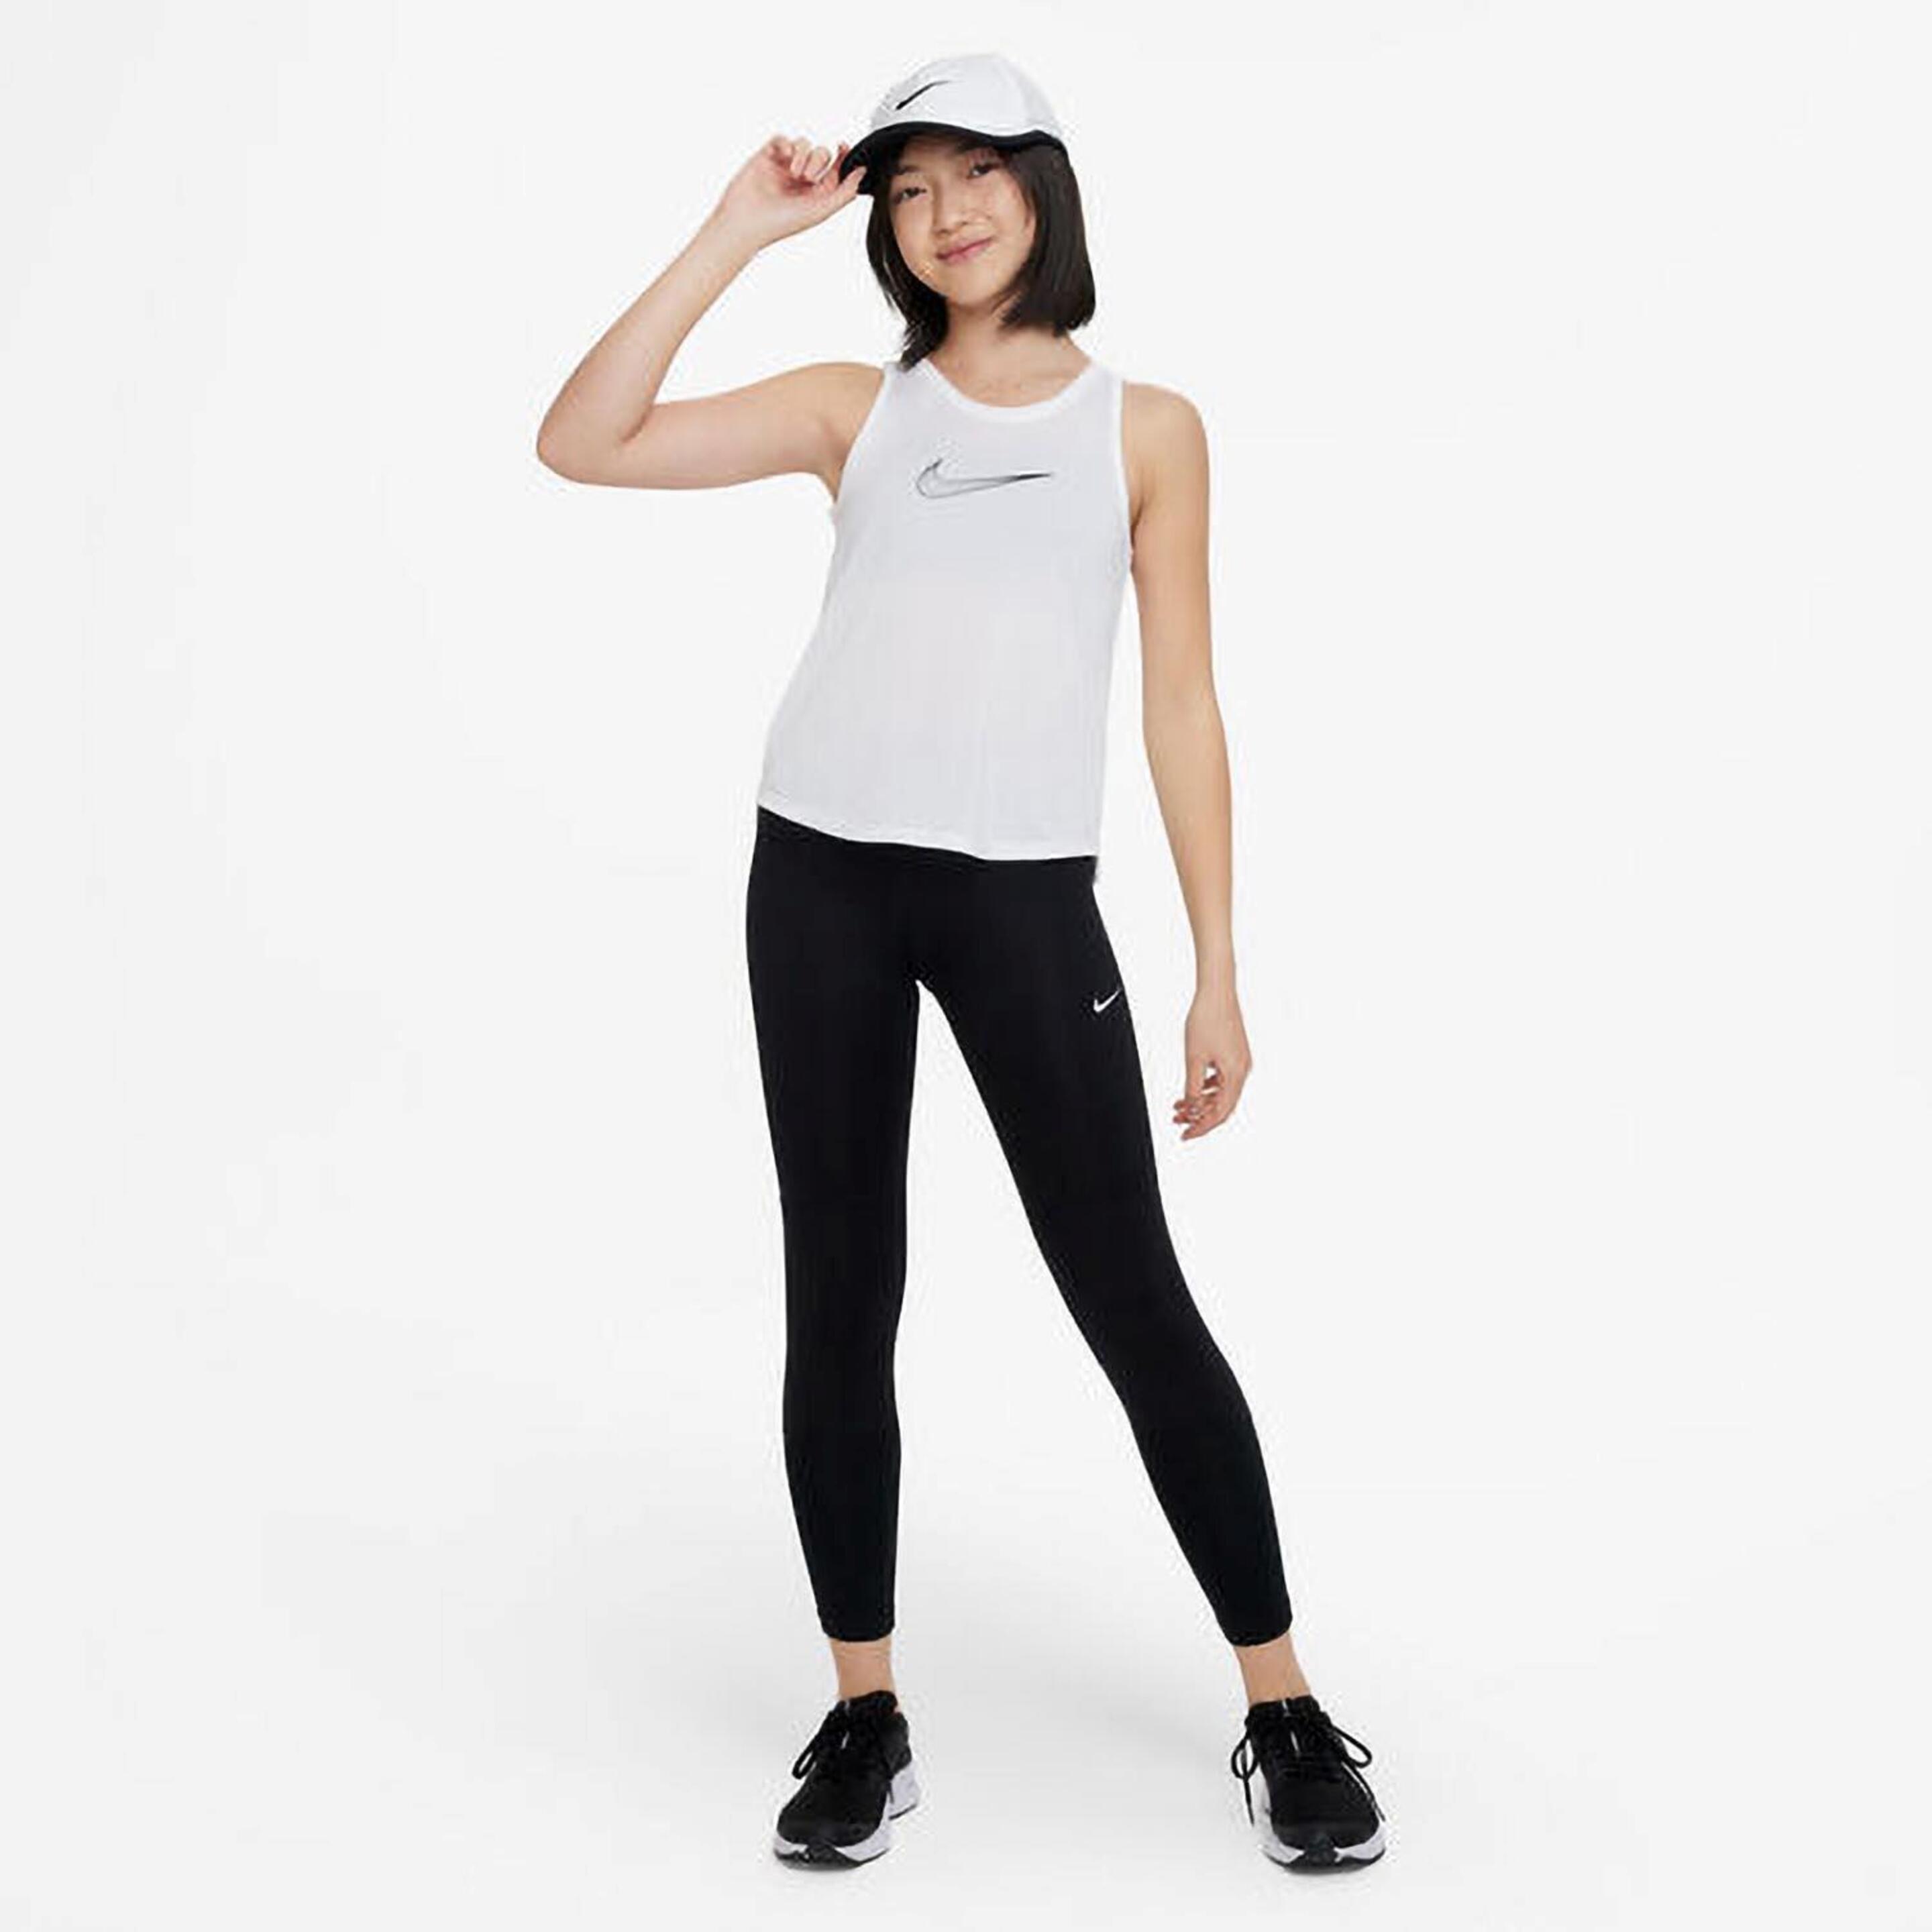 Nike One - Blanco - Camiseta Gym Niña